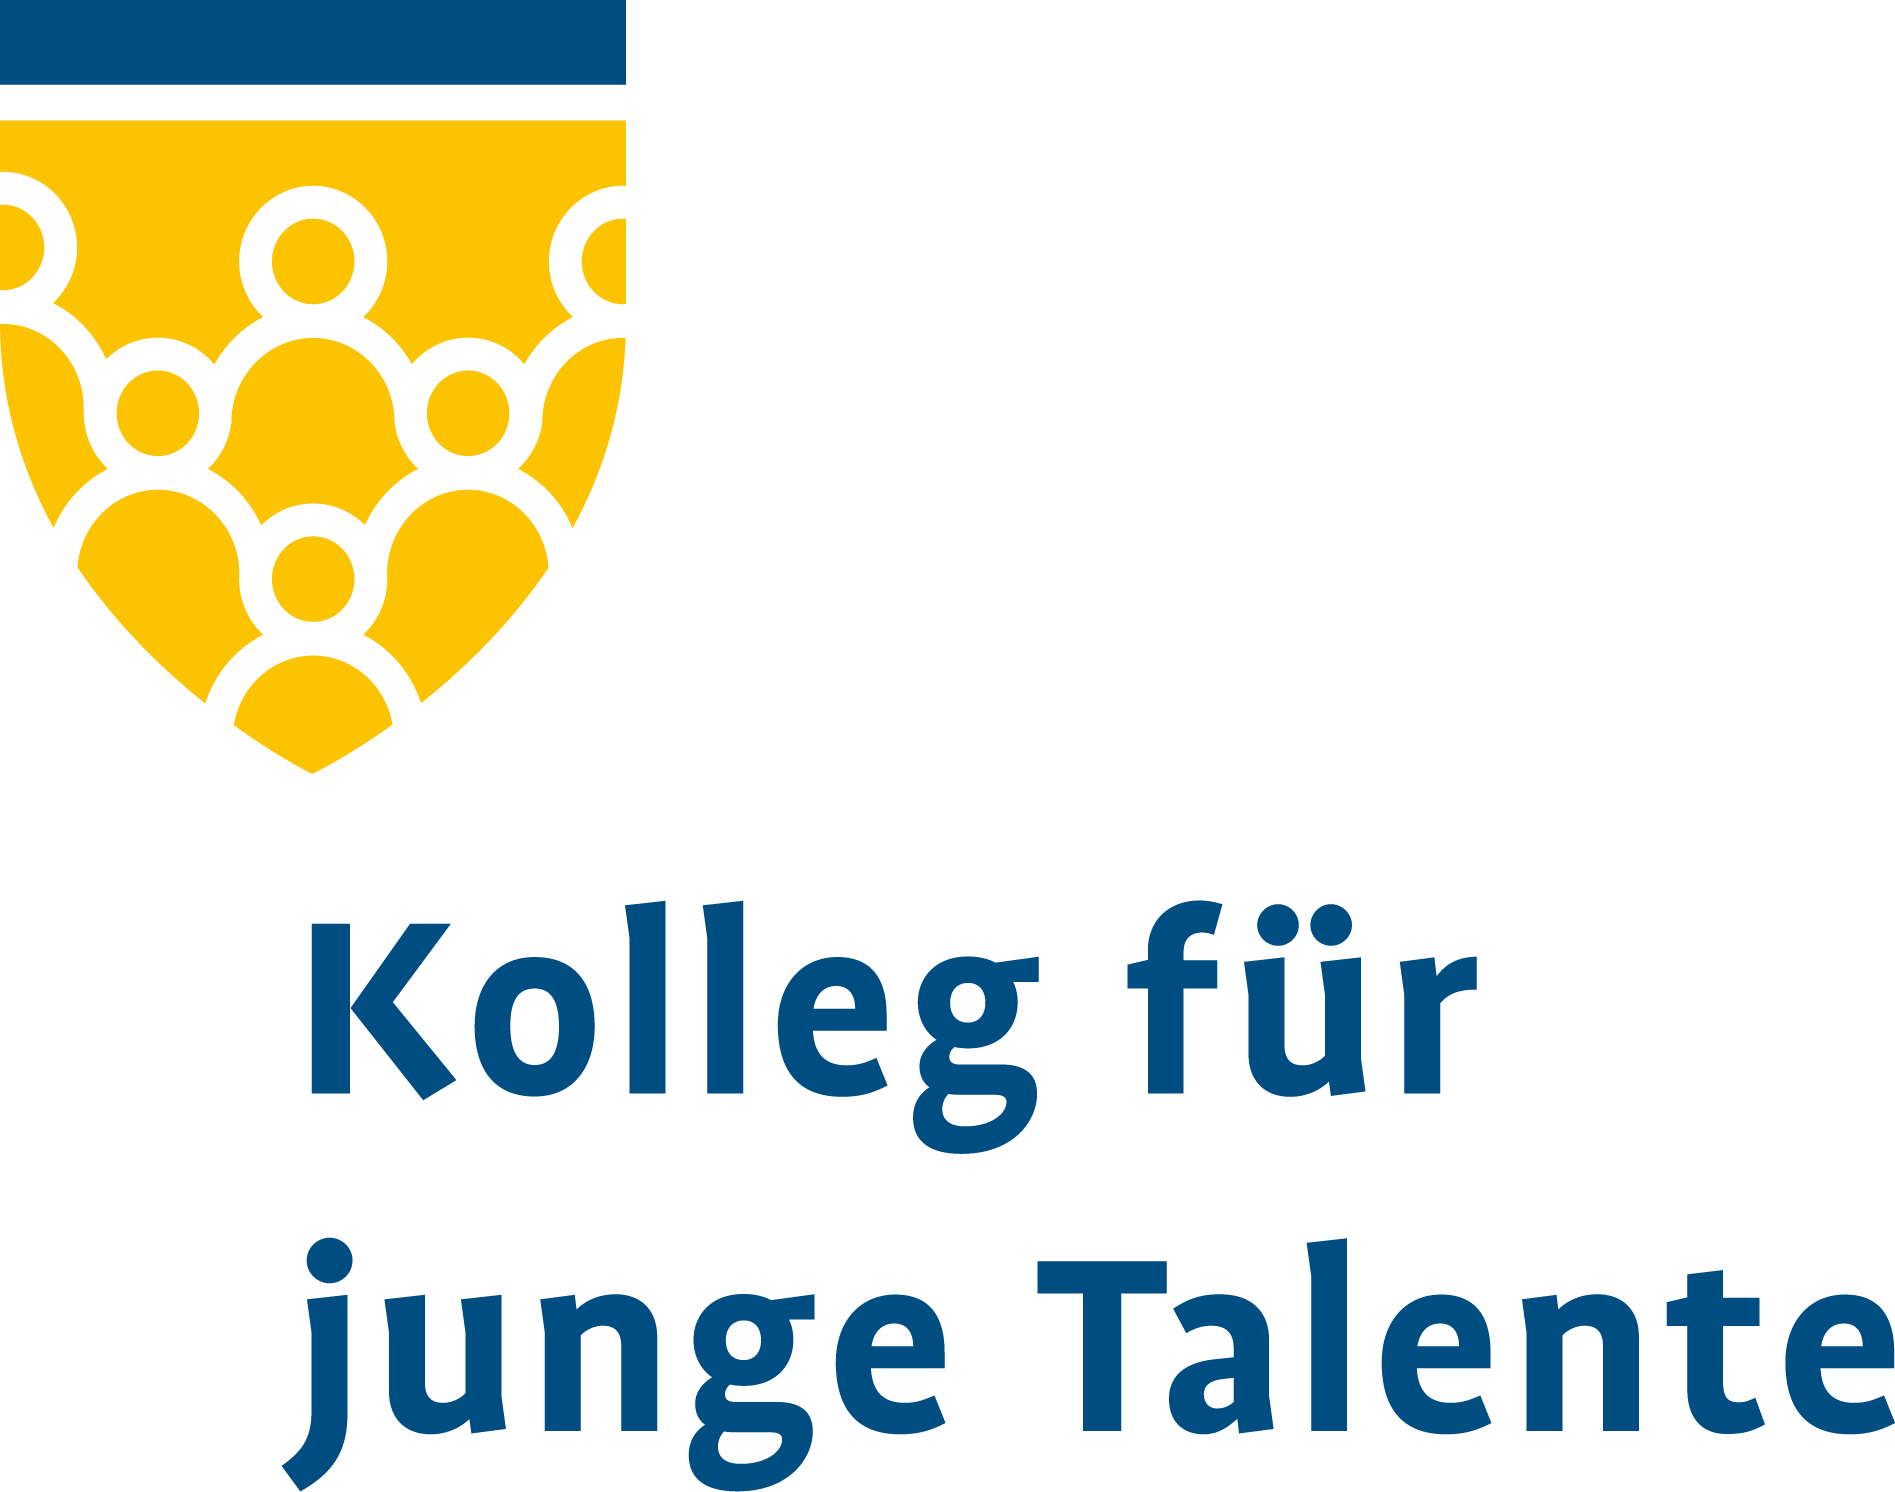 Das Kolleg für junge Talente Logo zeigt einen quasi gelben Schild, der aus Personenumrissen besteht, und oben drüber einen blauen Querstrich hat.